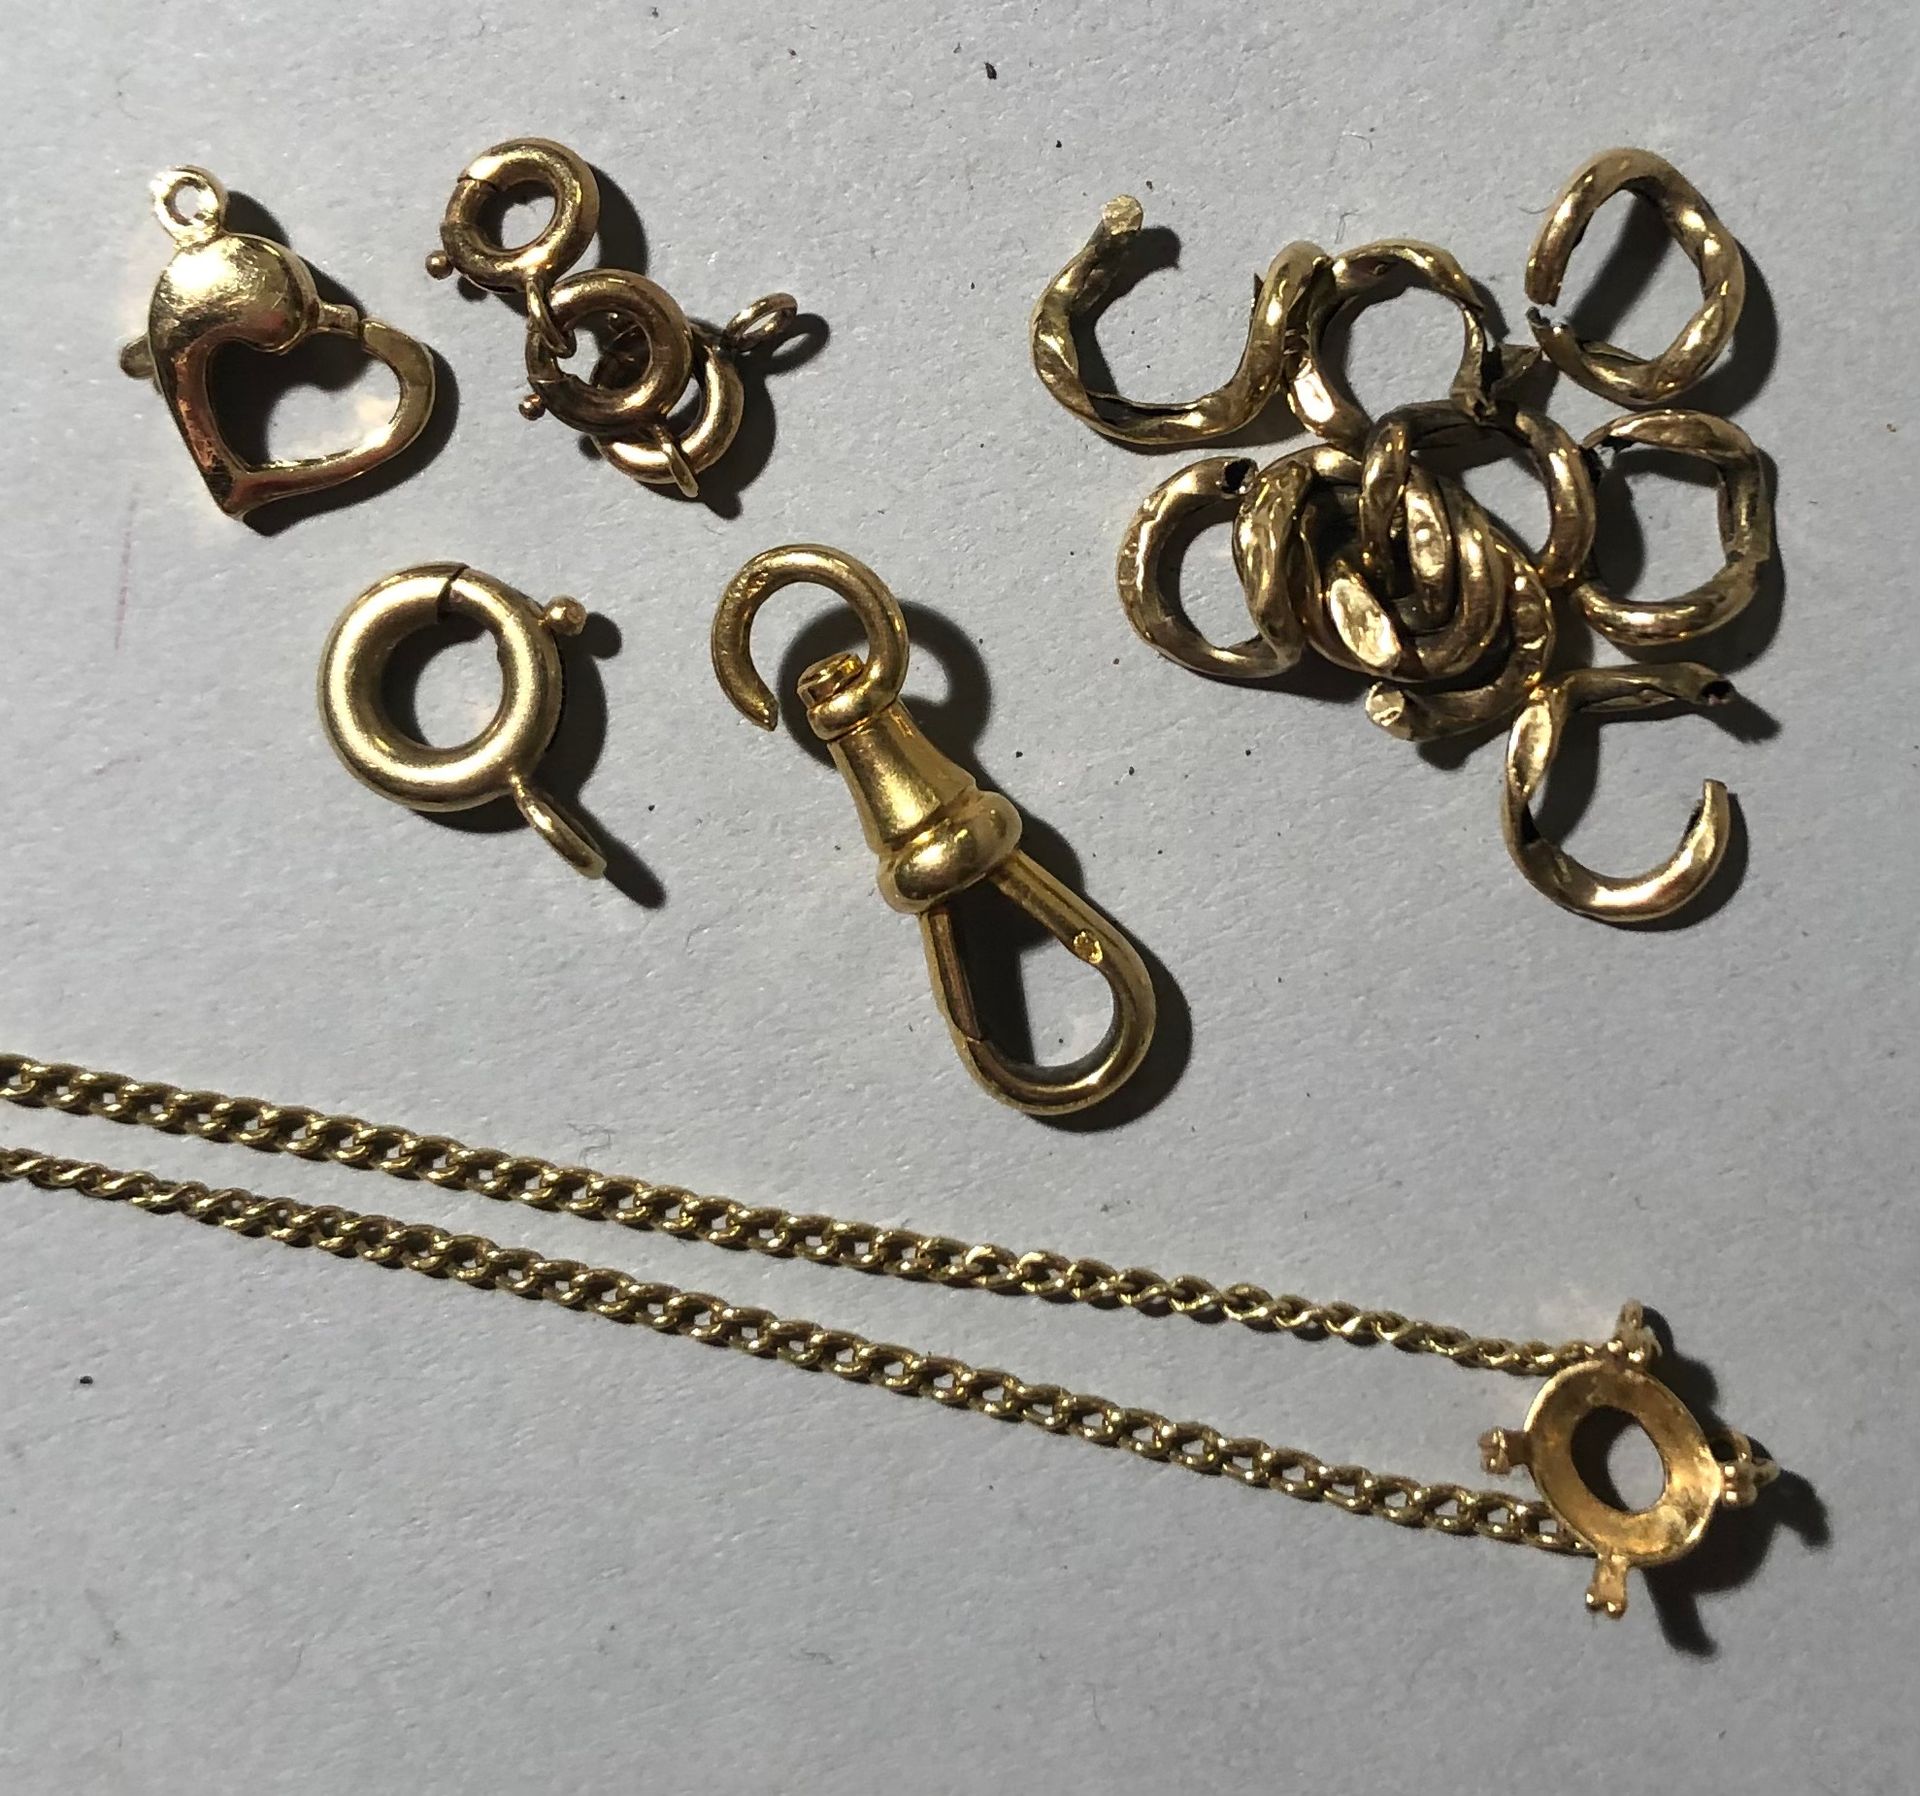 Null 18K（750）黄金碎片，包括链节、链条和吊坠座、卡钩和搭扣。
重量：11.47g。